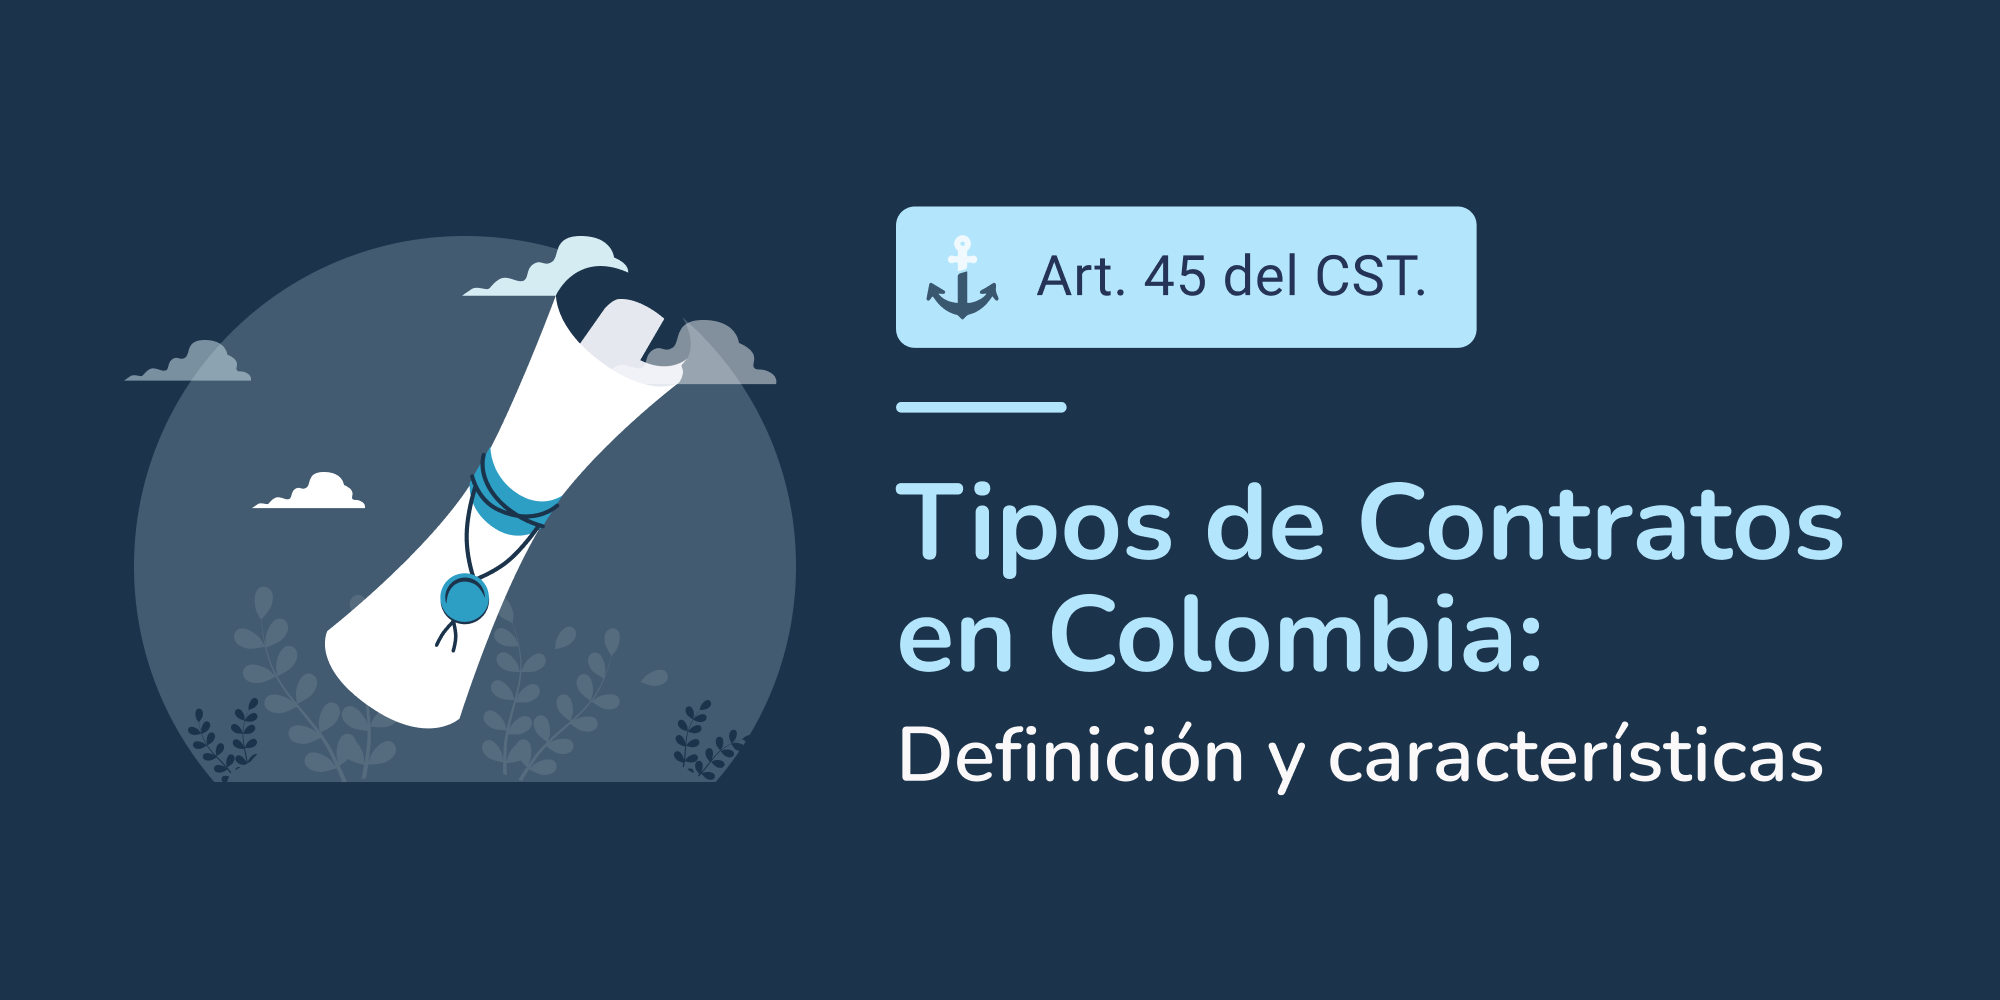 Portada blog - Tipos de contratos en Colombia | Imagen de contrato donde sé ve un pergamino en representación de un contrato laboral